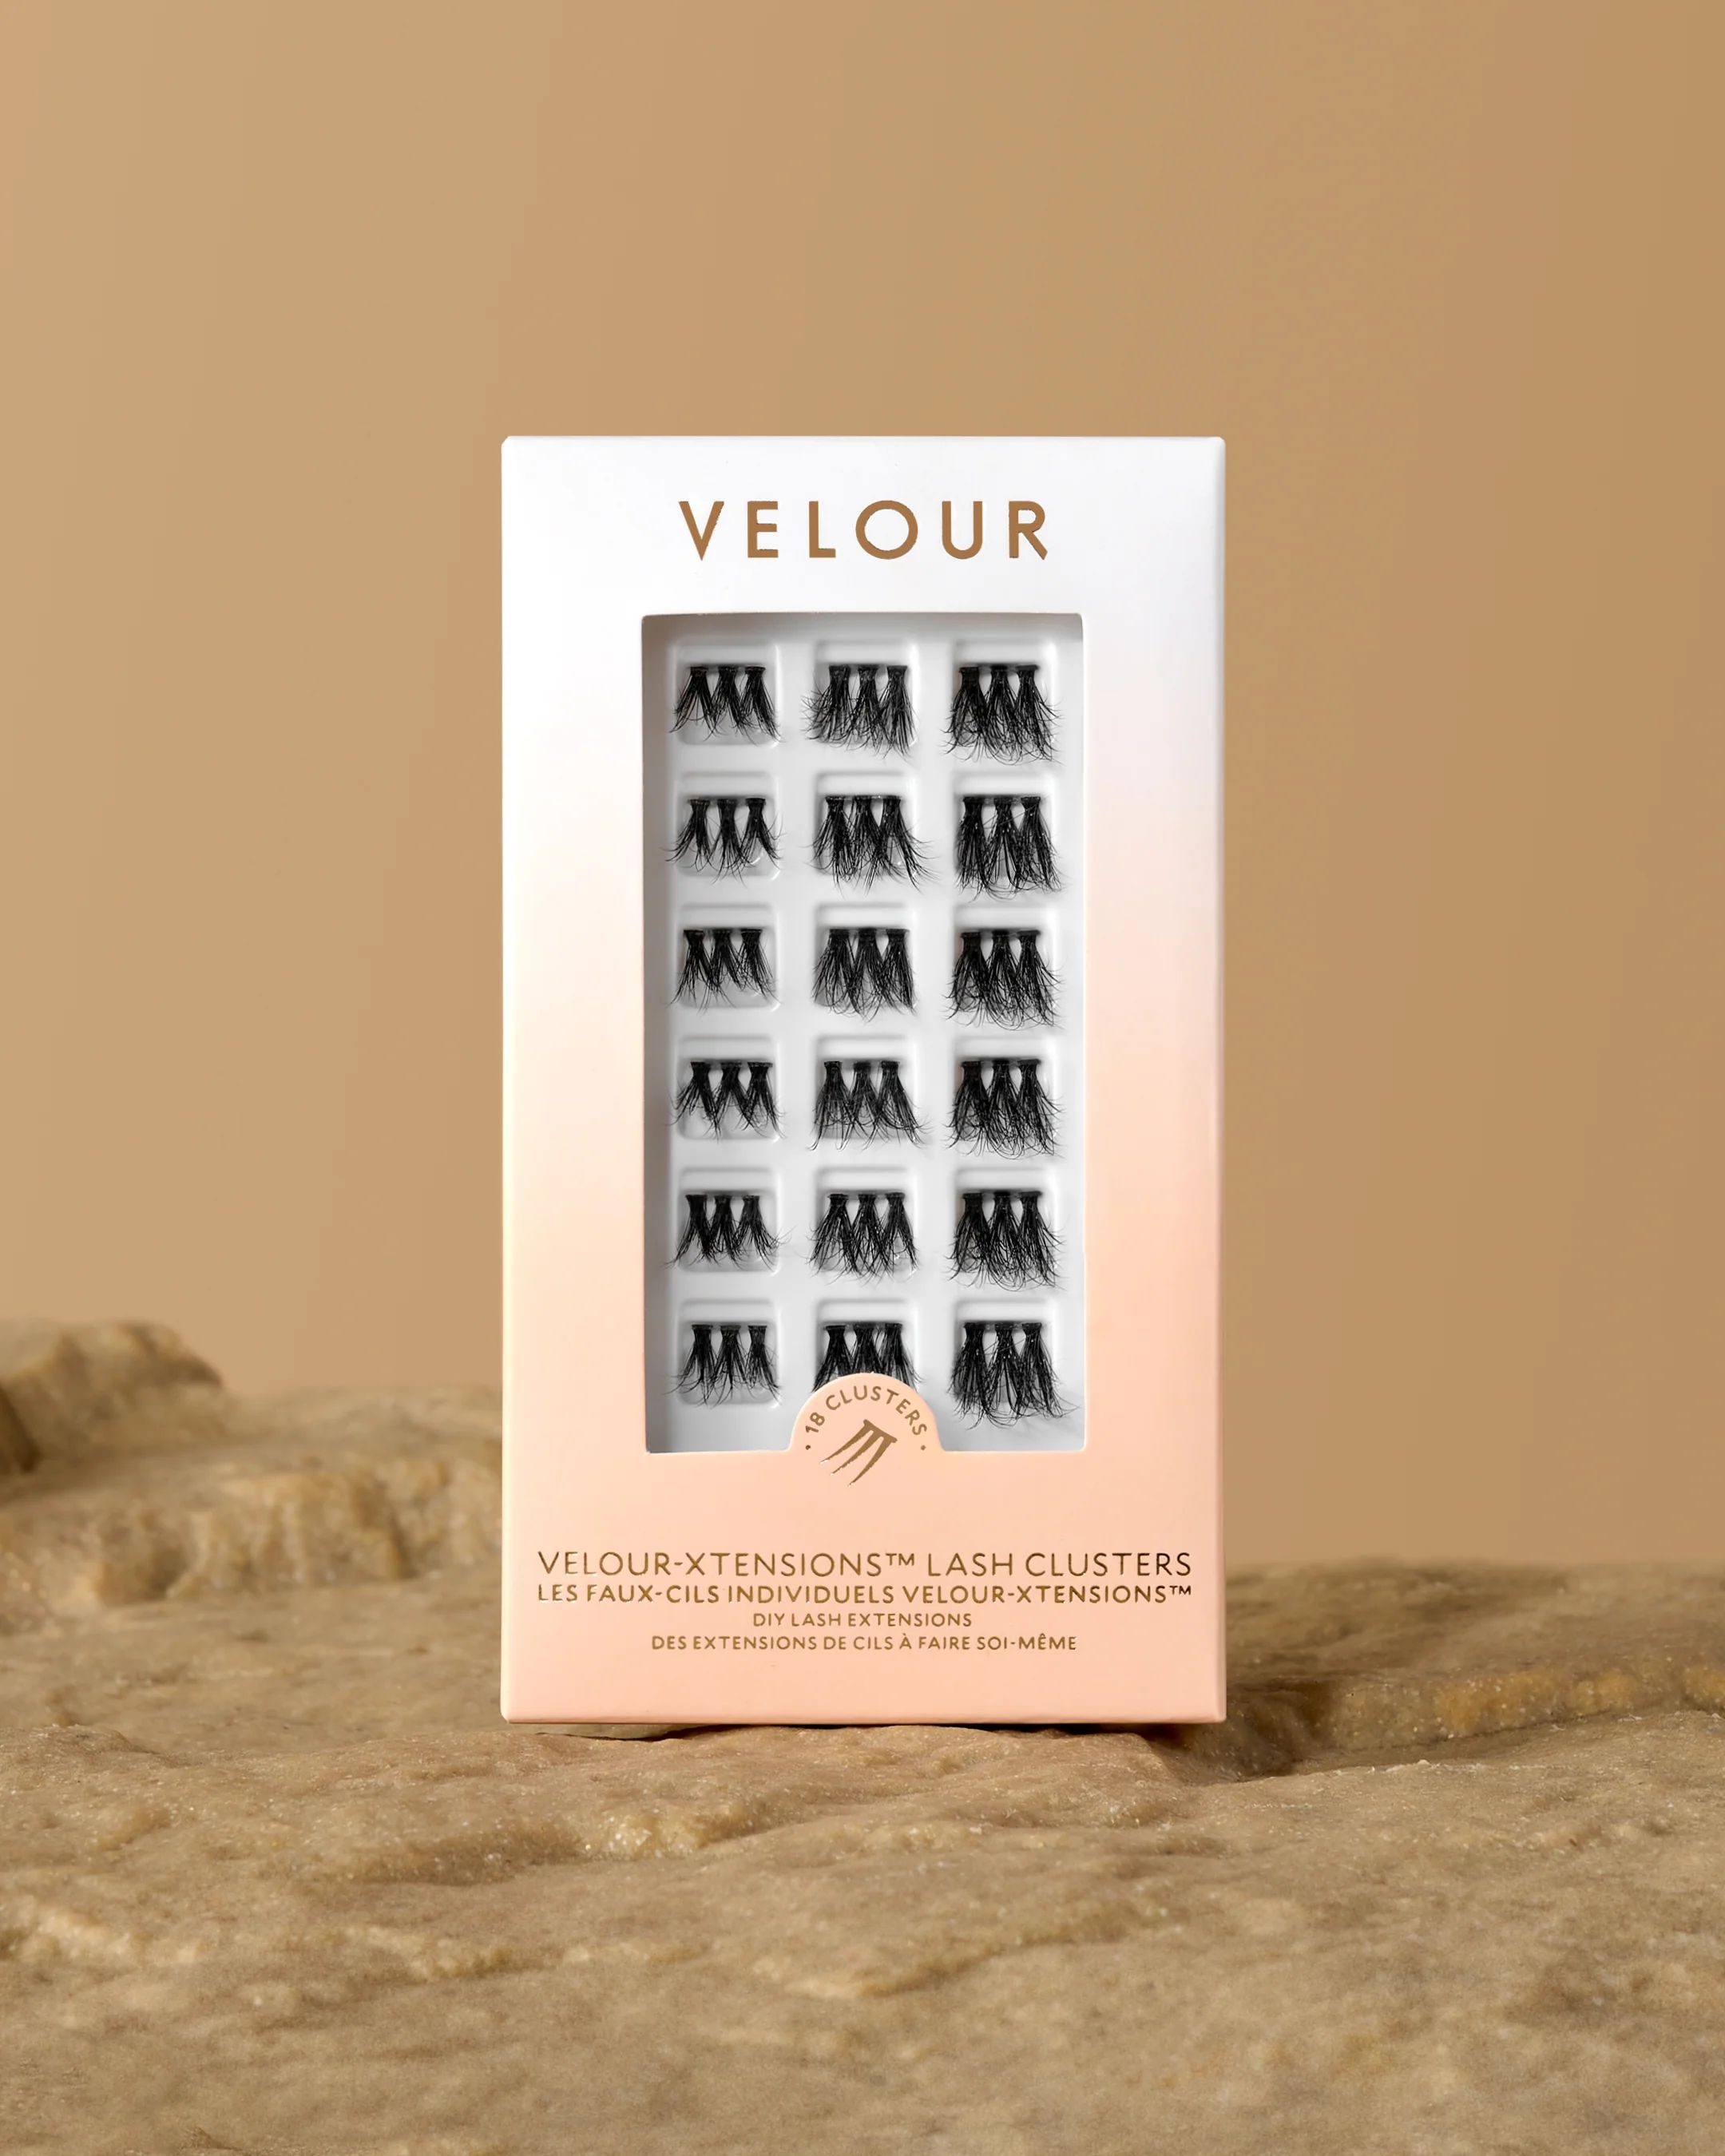 Volume Velour-Xtensions™ Lash Clusters | Velour Beauty